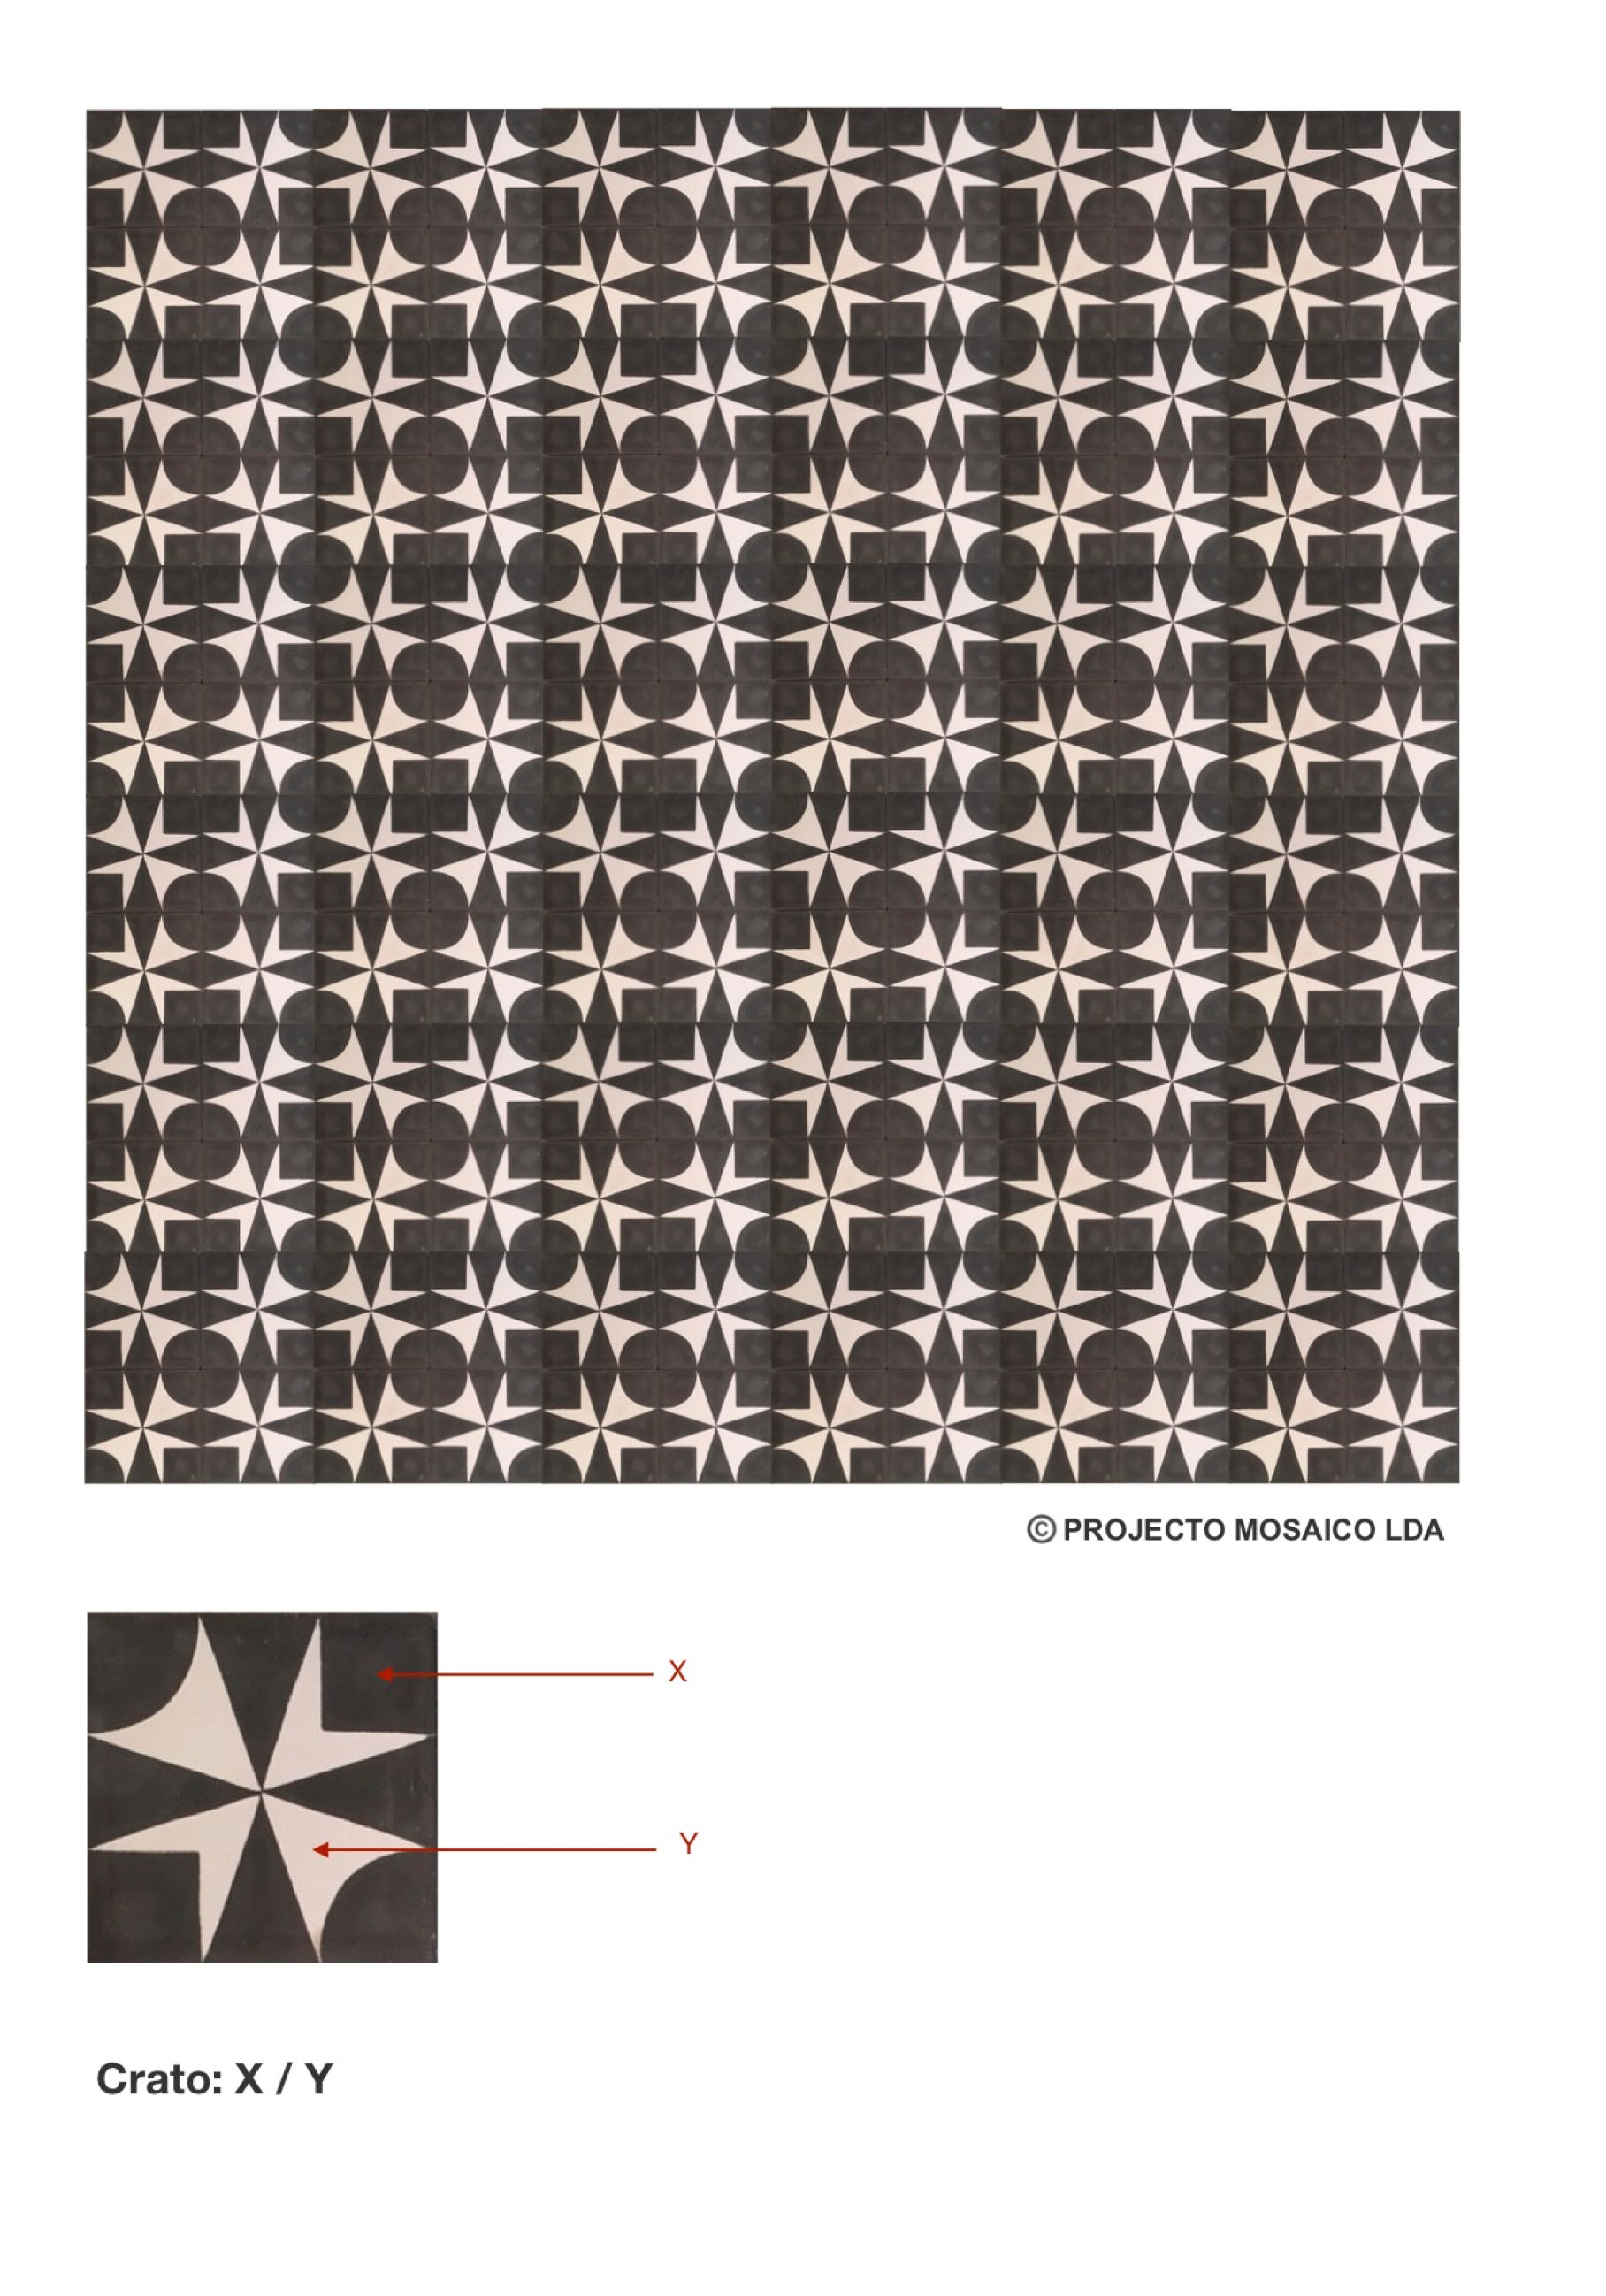 illustração de aplicação do mosaico hidráulico ref: Crato